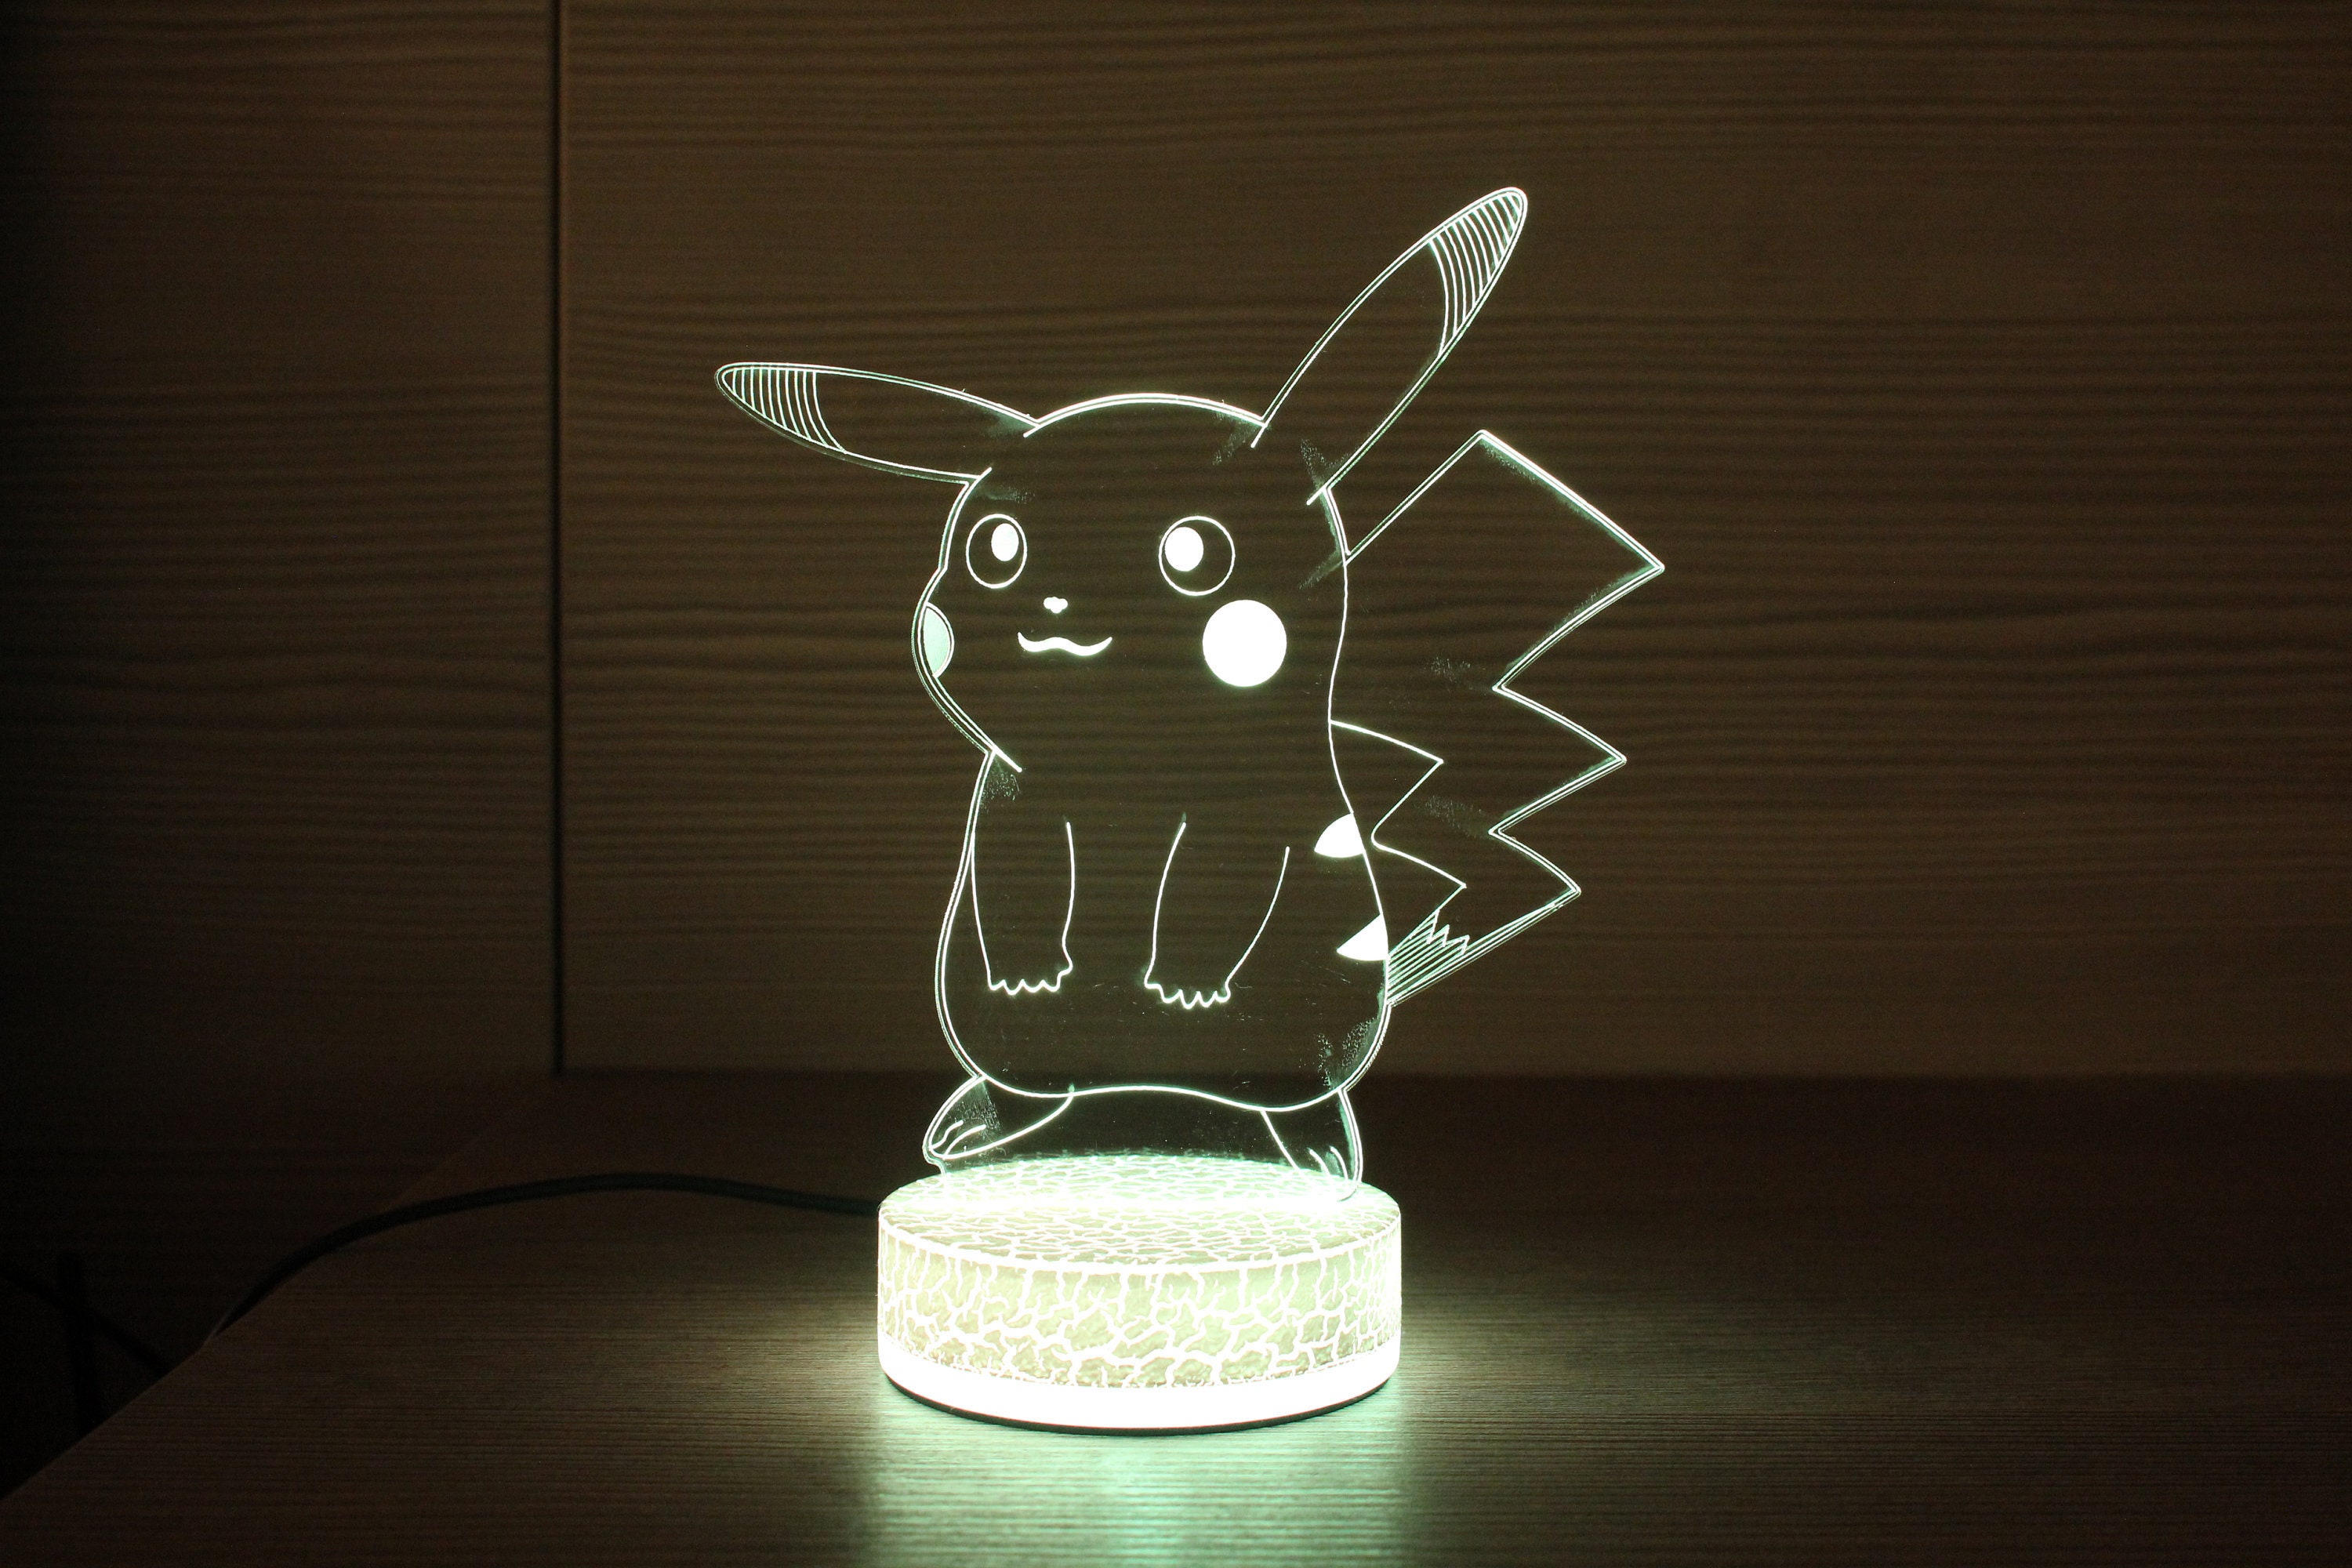 Em promoção! Pokemon Pikachu 3d Estéreo Luz Da Noite Criativas De Led  Colorido Controle Remoto Cartão De Preto E Branco Acrílico Crianças Toygift